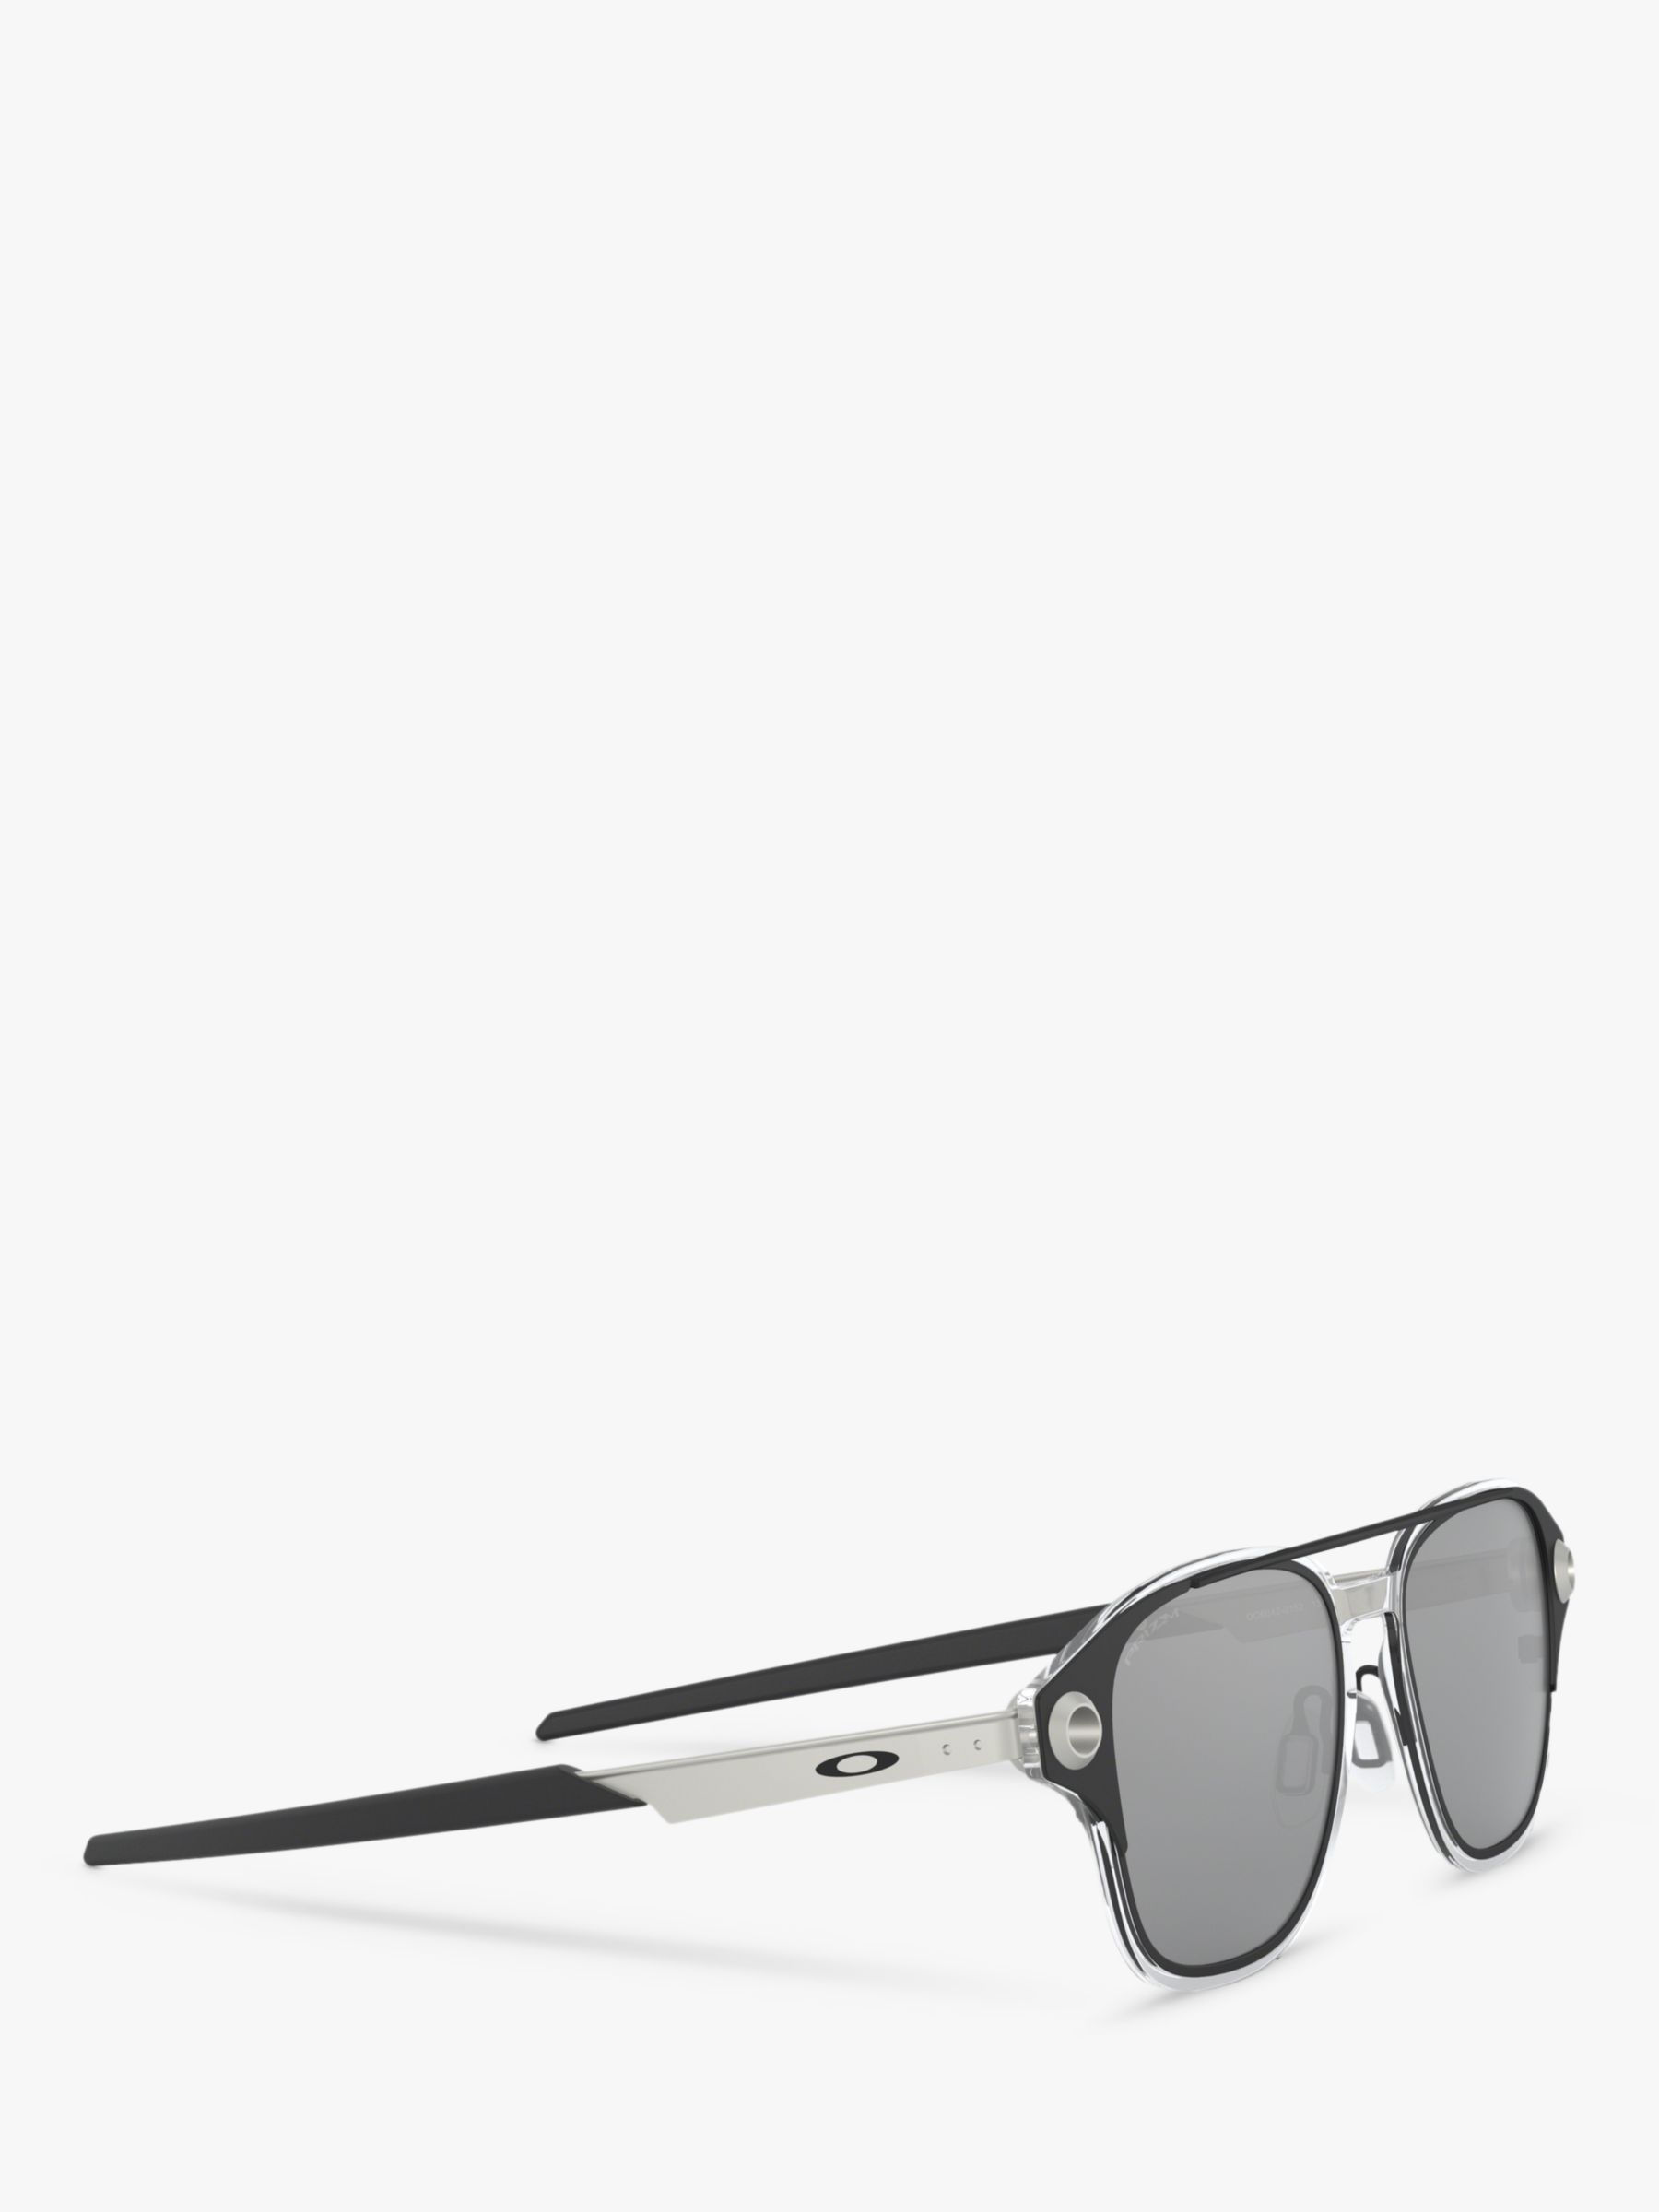 Oakley OO6042 Men's Coldfuse Square Sunglasses, Black/Grey